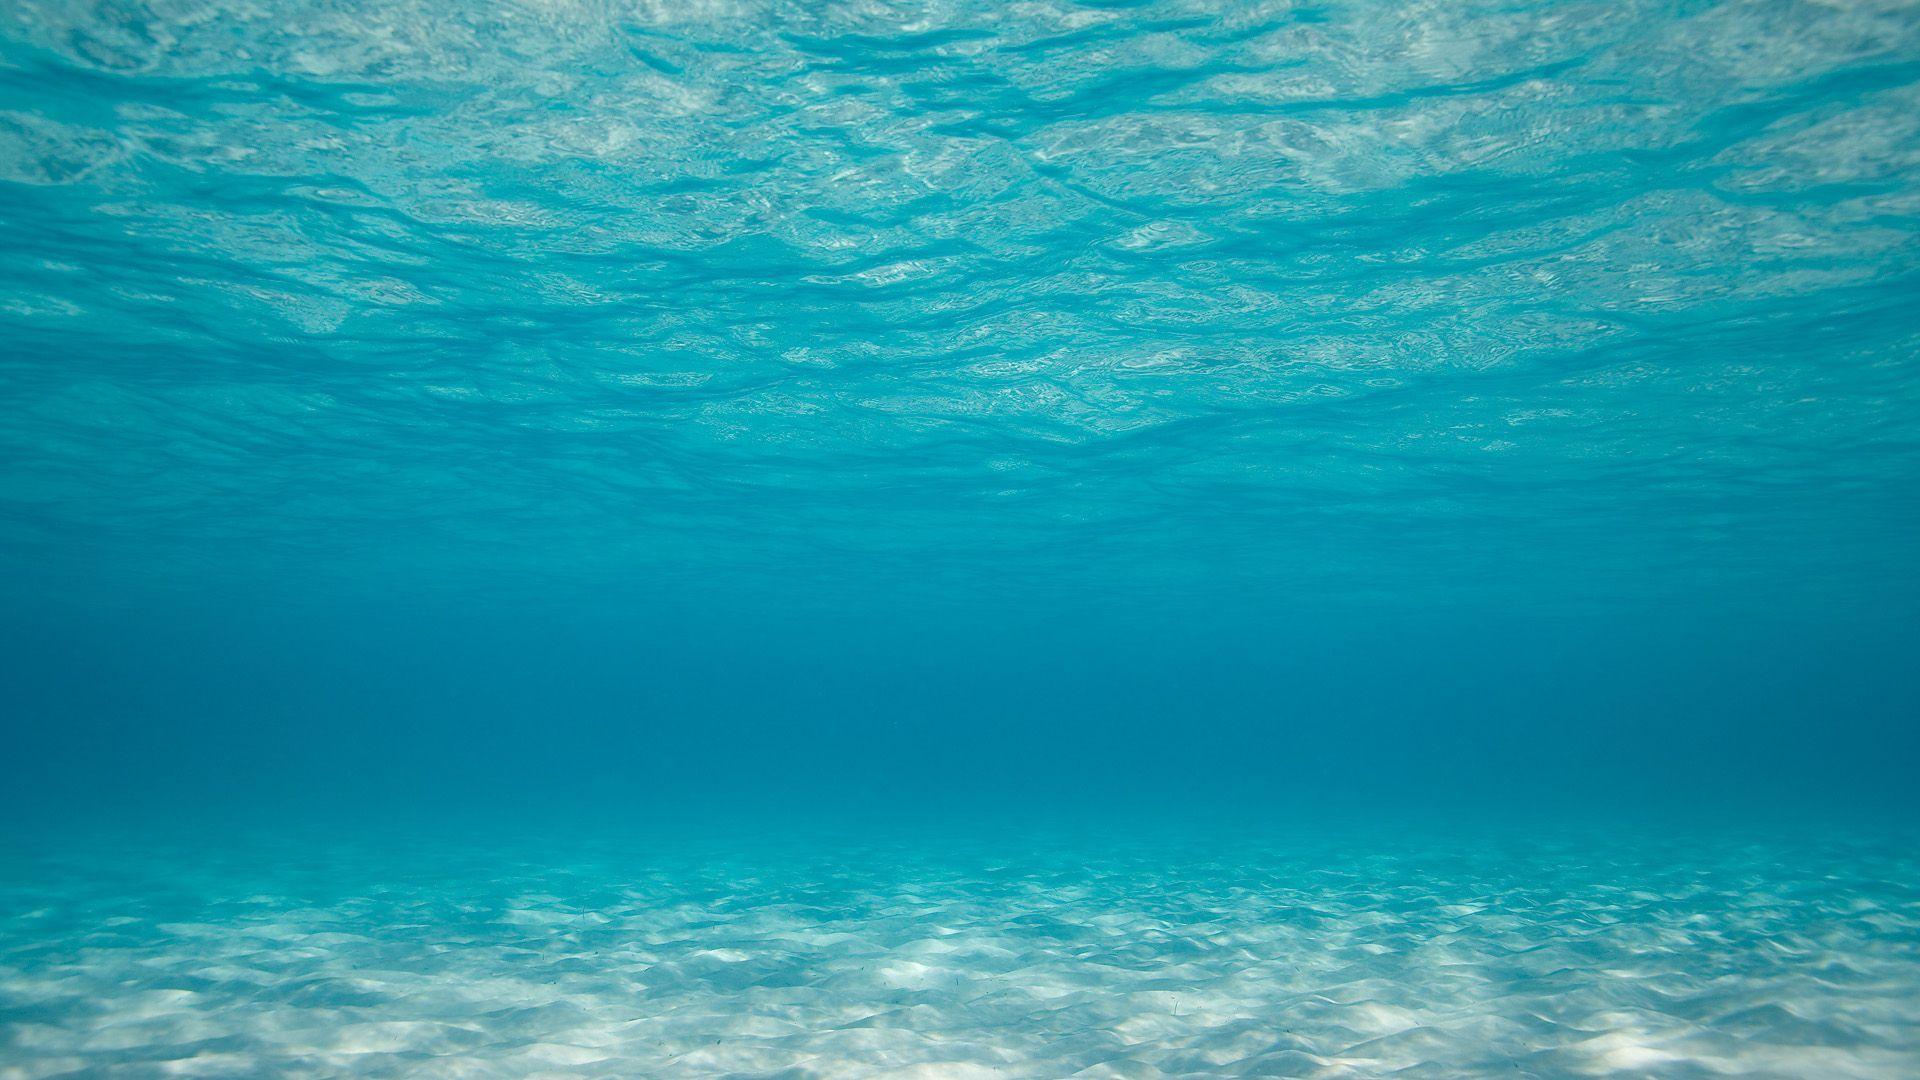 Hình nền đại dương dành cho những người yêu thích khám phá và hiểu biết về cuộc sống dưới đáy đại dương. Sự hòa quyện giữa những khoảng không xanh và màu xanh ngọc bích của đại dương sẽ làm cho bạn trông vô cùng huyền diệu. Hãy cùng lắp đặt hình nền này và tận hưởng không gian đầy sức sống của đại dương.